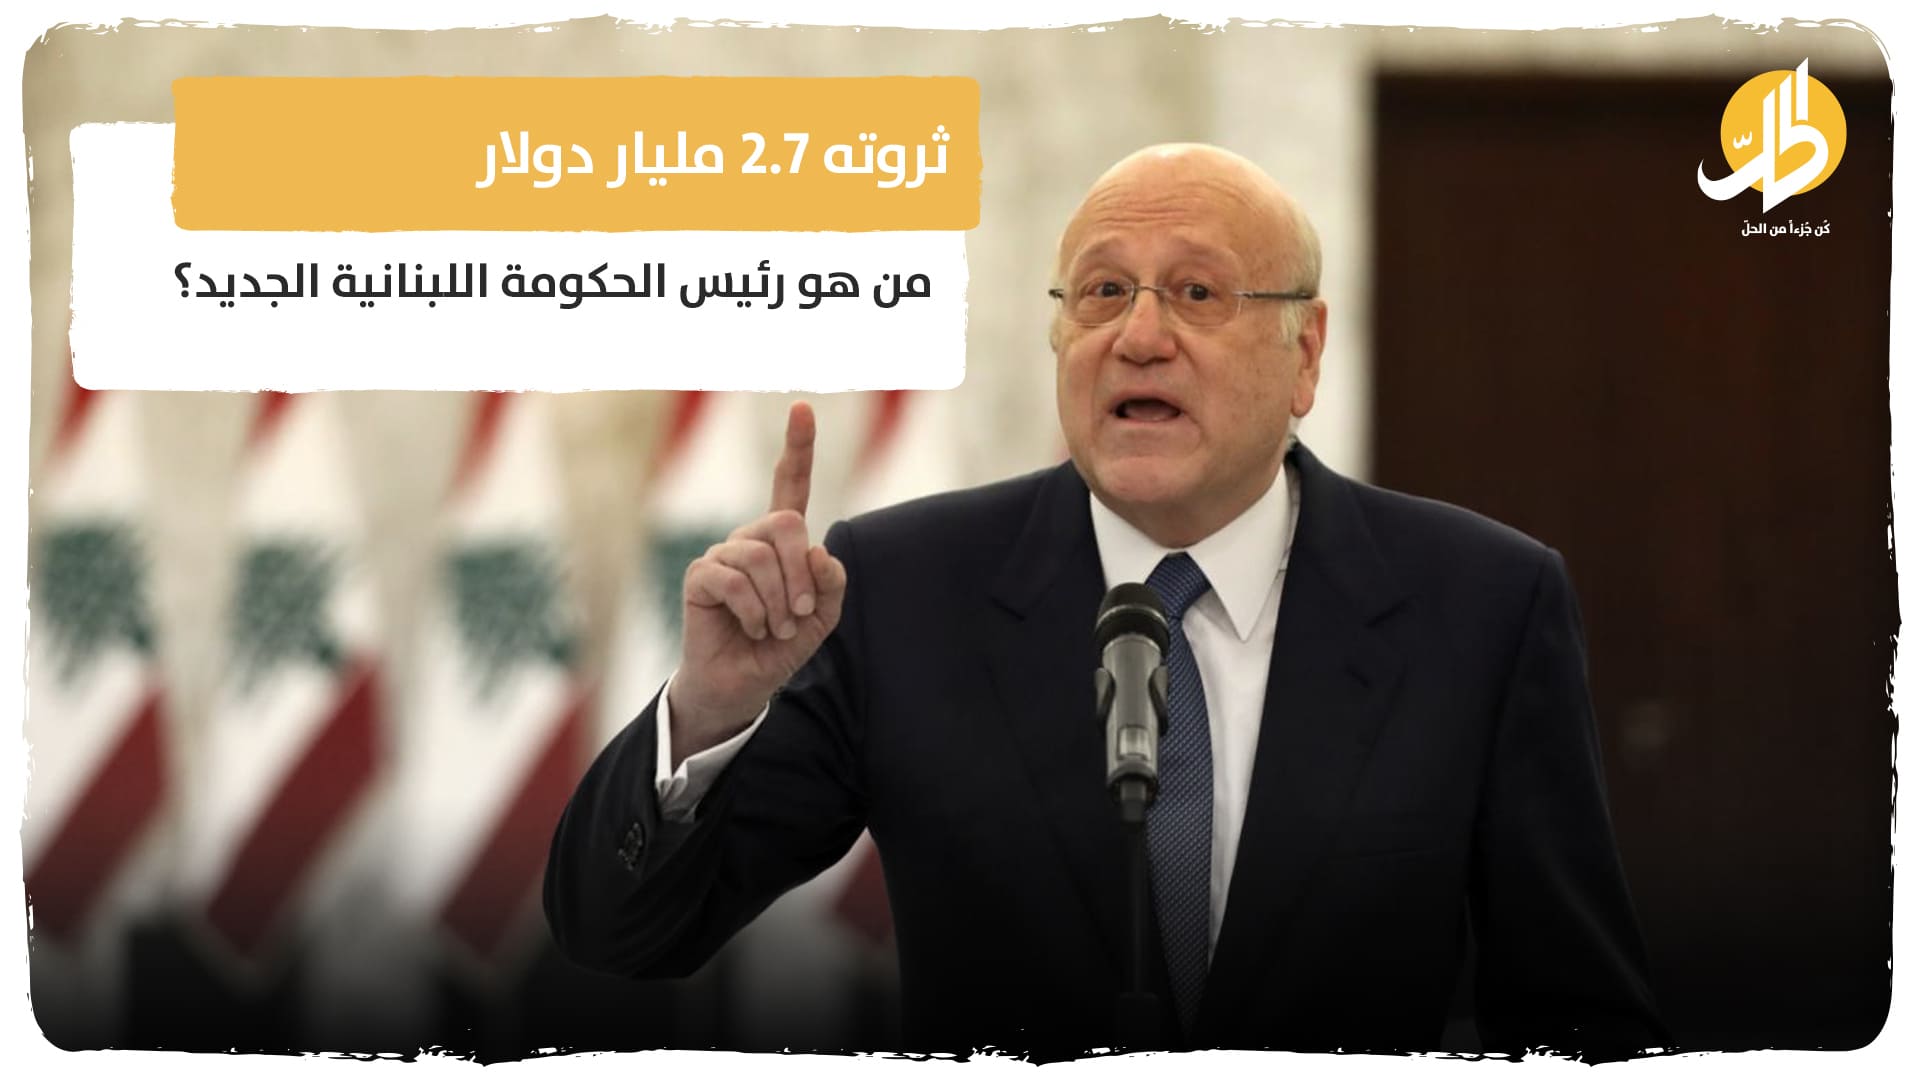 ثروته 2.7 مليار دولار.. من هو رئيس الحكومة اللبنانية الجديد؟